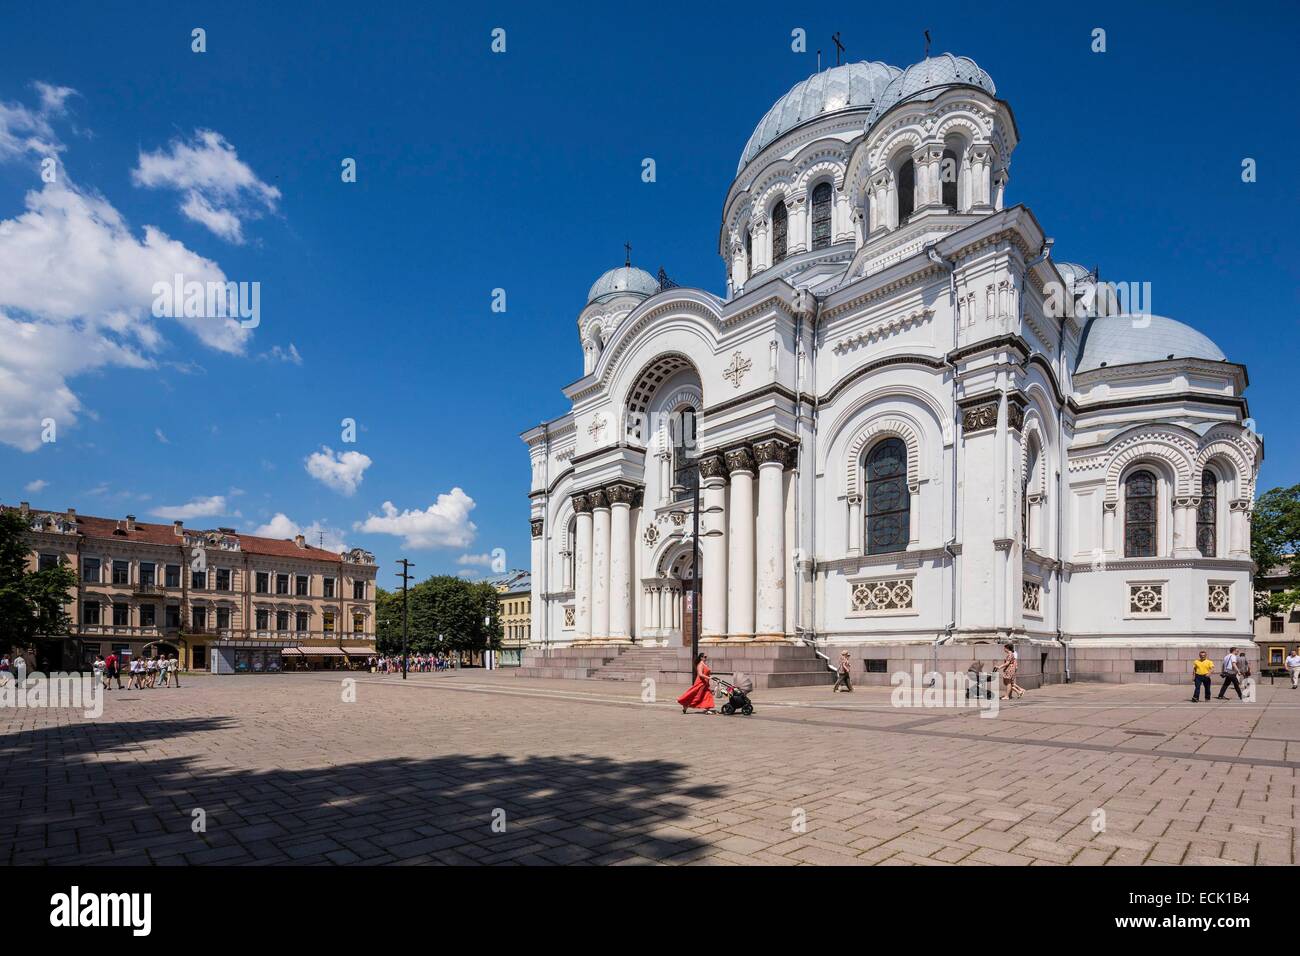 La Lituanie (pays baltes), comté de Kaunas, Kaunas, l'église de Saint Michel Archange ou l'église de garnison, la place de l'indépendance Banque D'Images